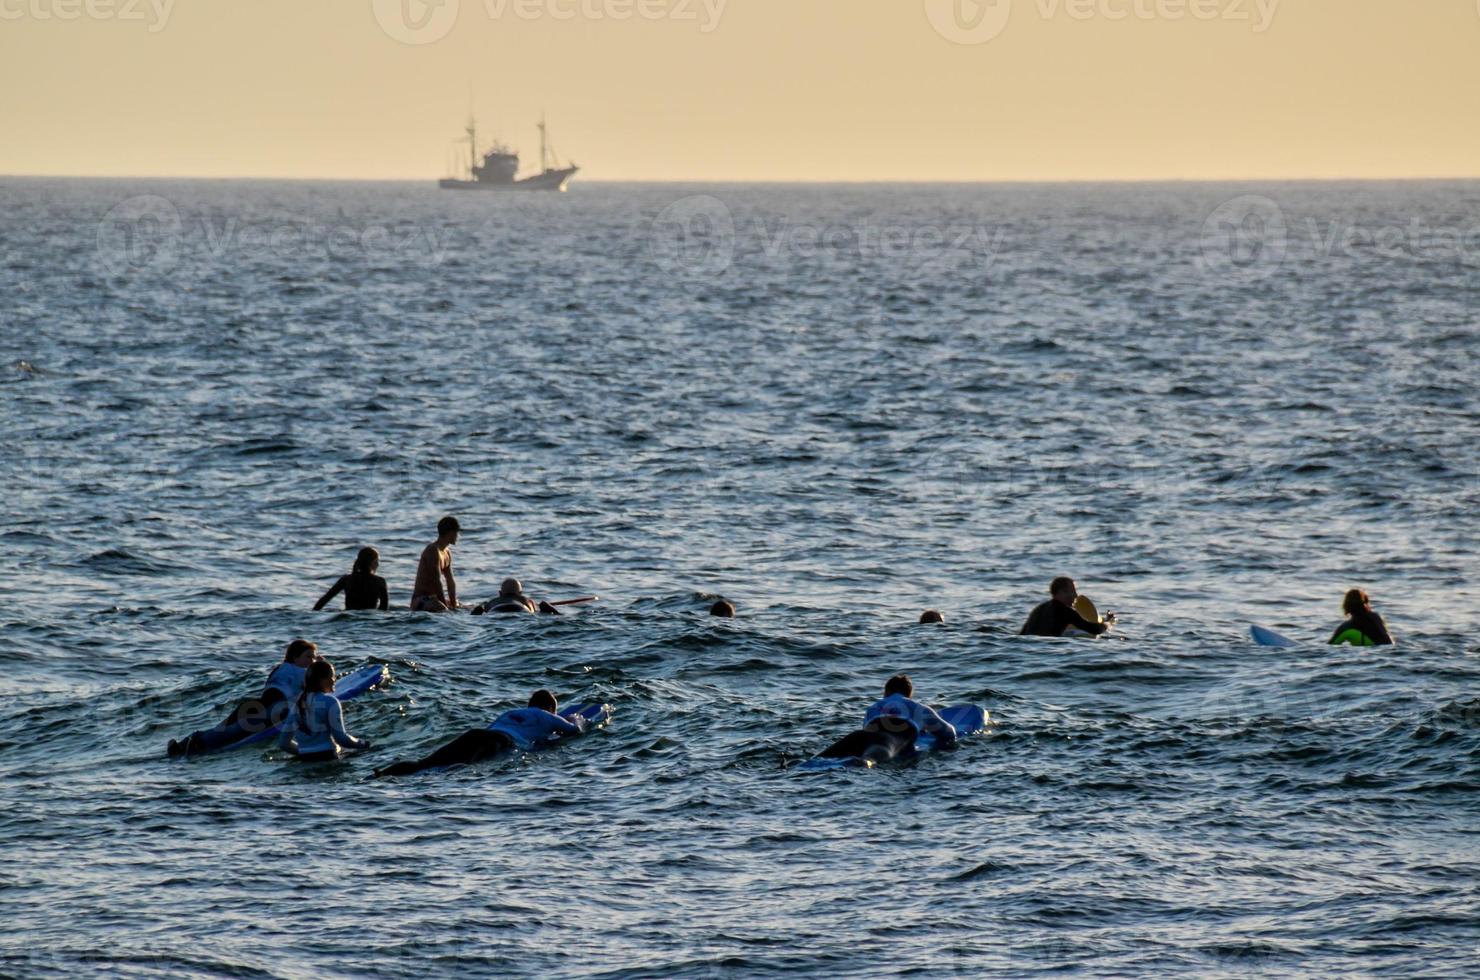 surfistas no oceano foto